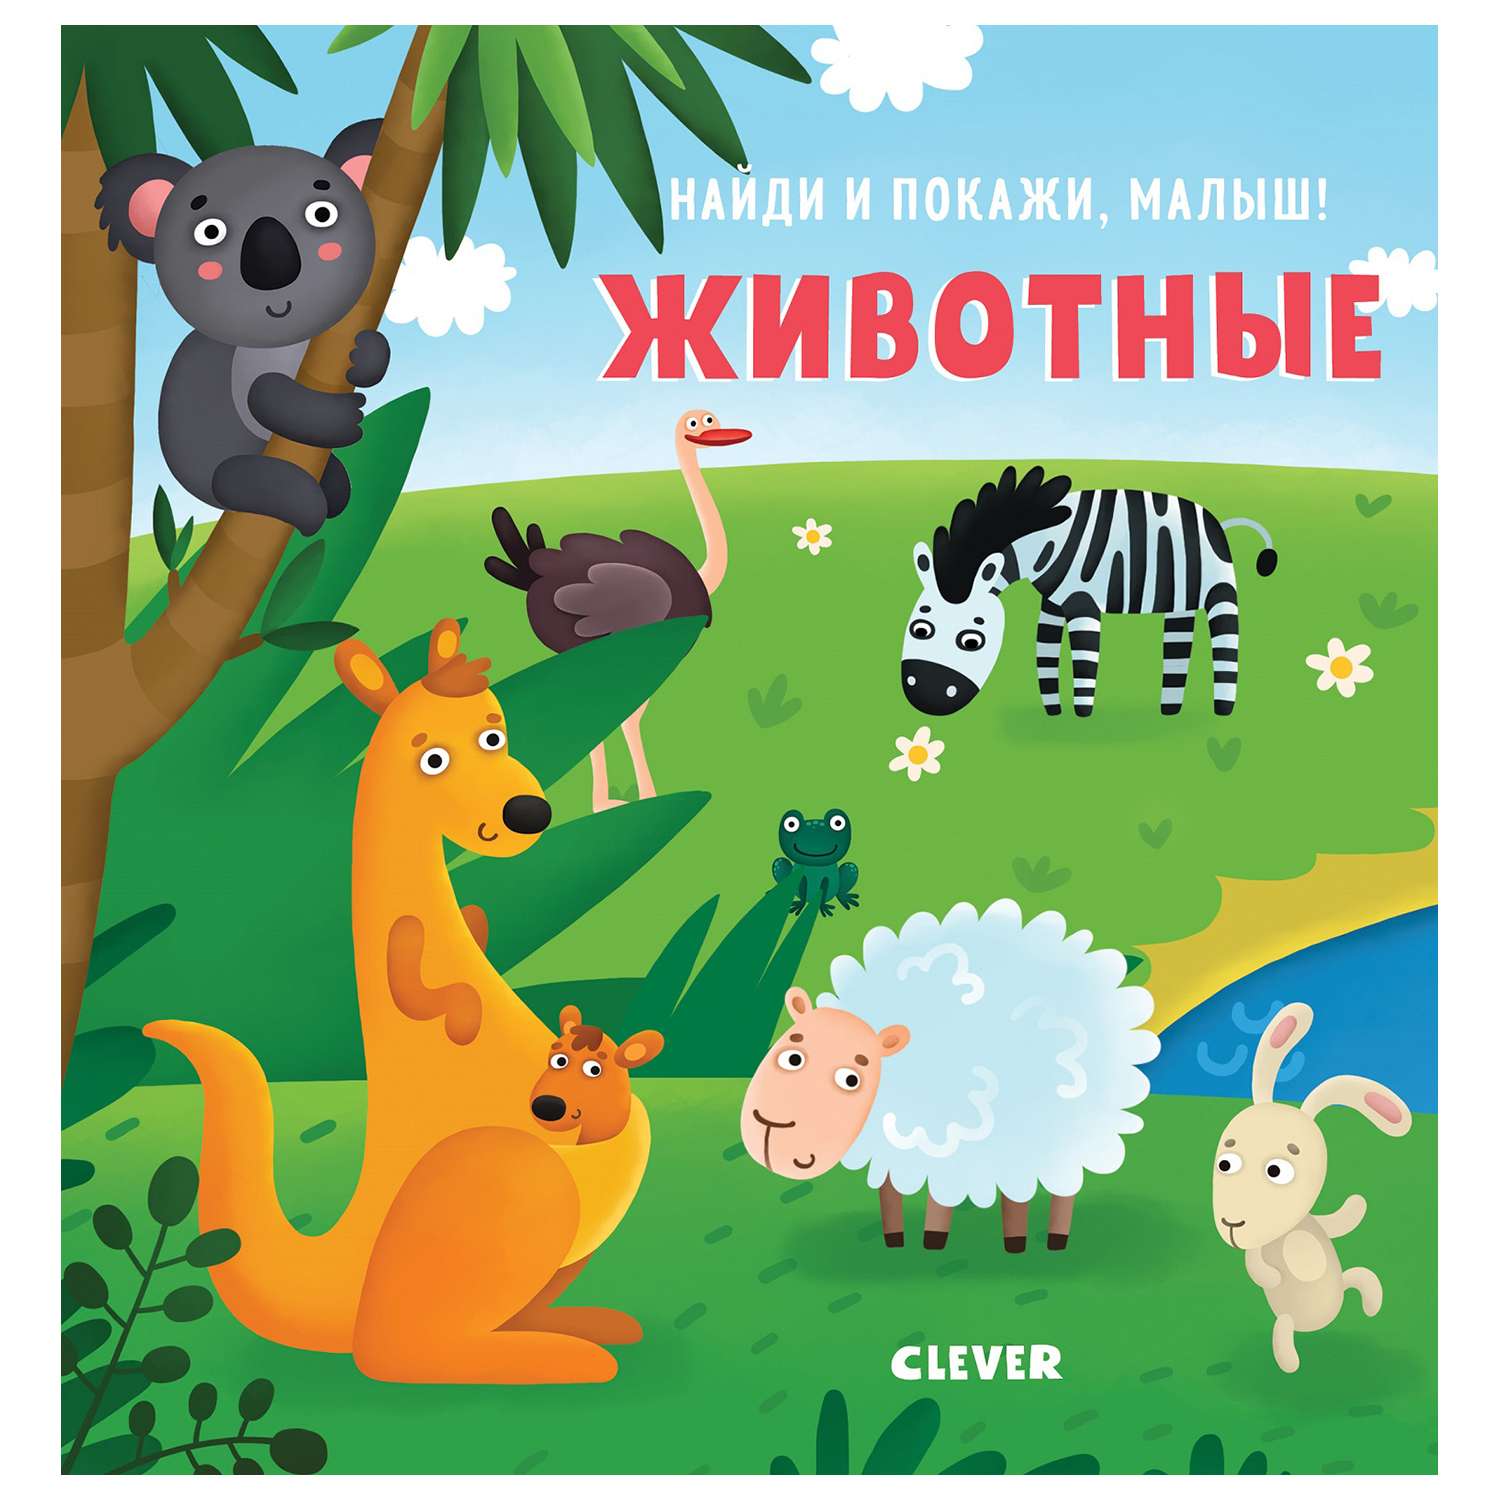 Книга Clever Найди и покажи малыш Животные - фото 1